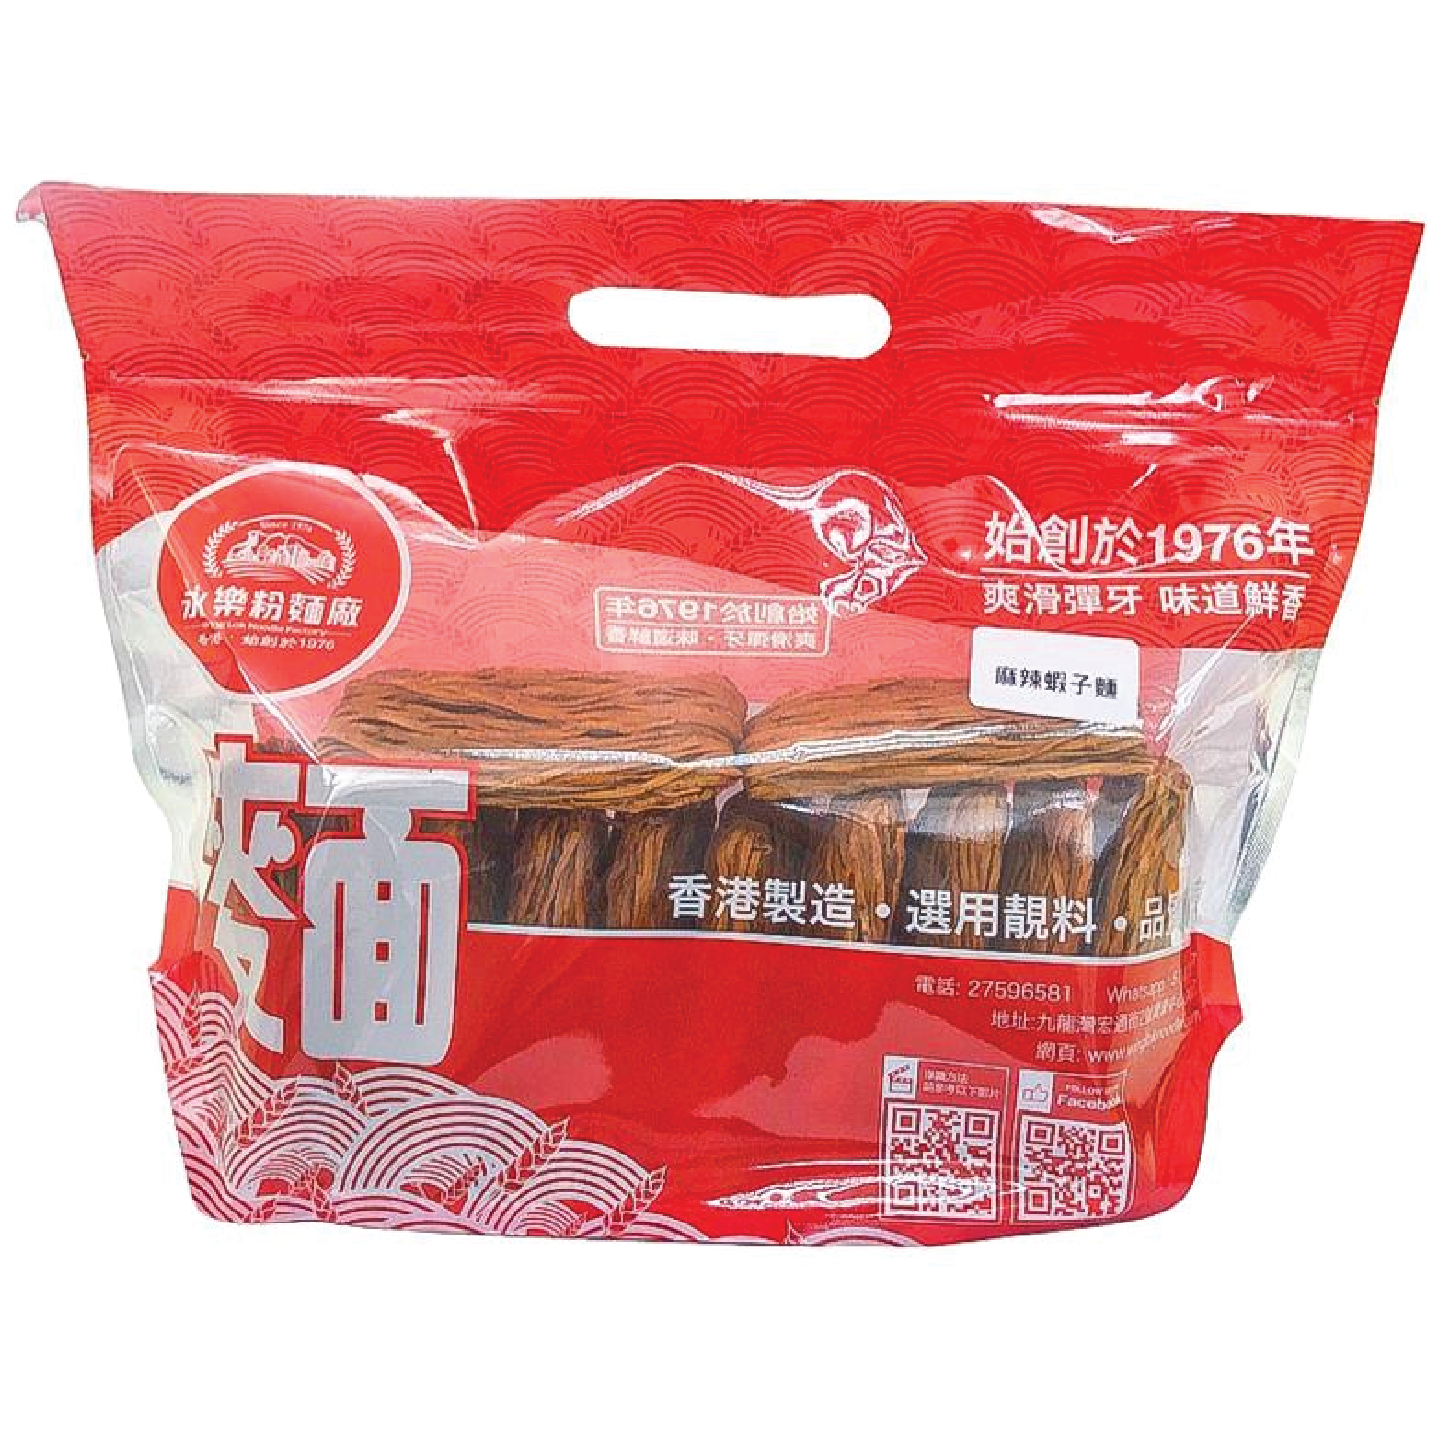 WING LOK NOODLES Spicy Shrimp Roe Noodle (12PCS) 永樂粉麵廠 麻辣蝦籽麵(12個裝)